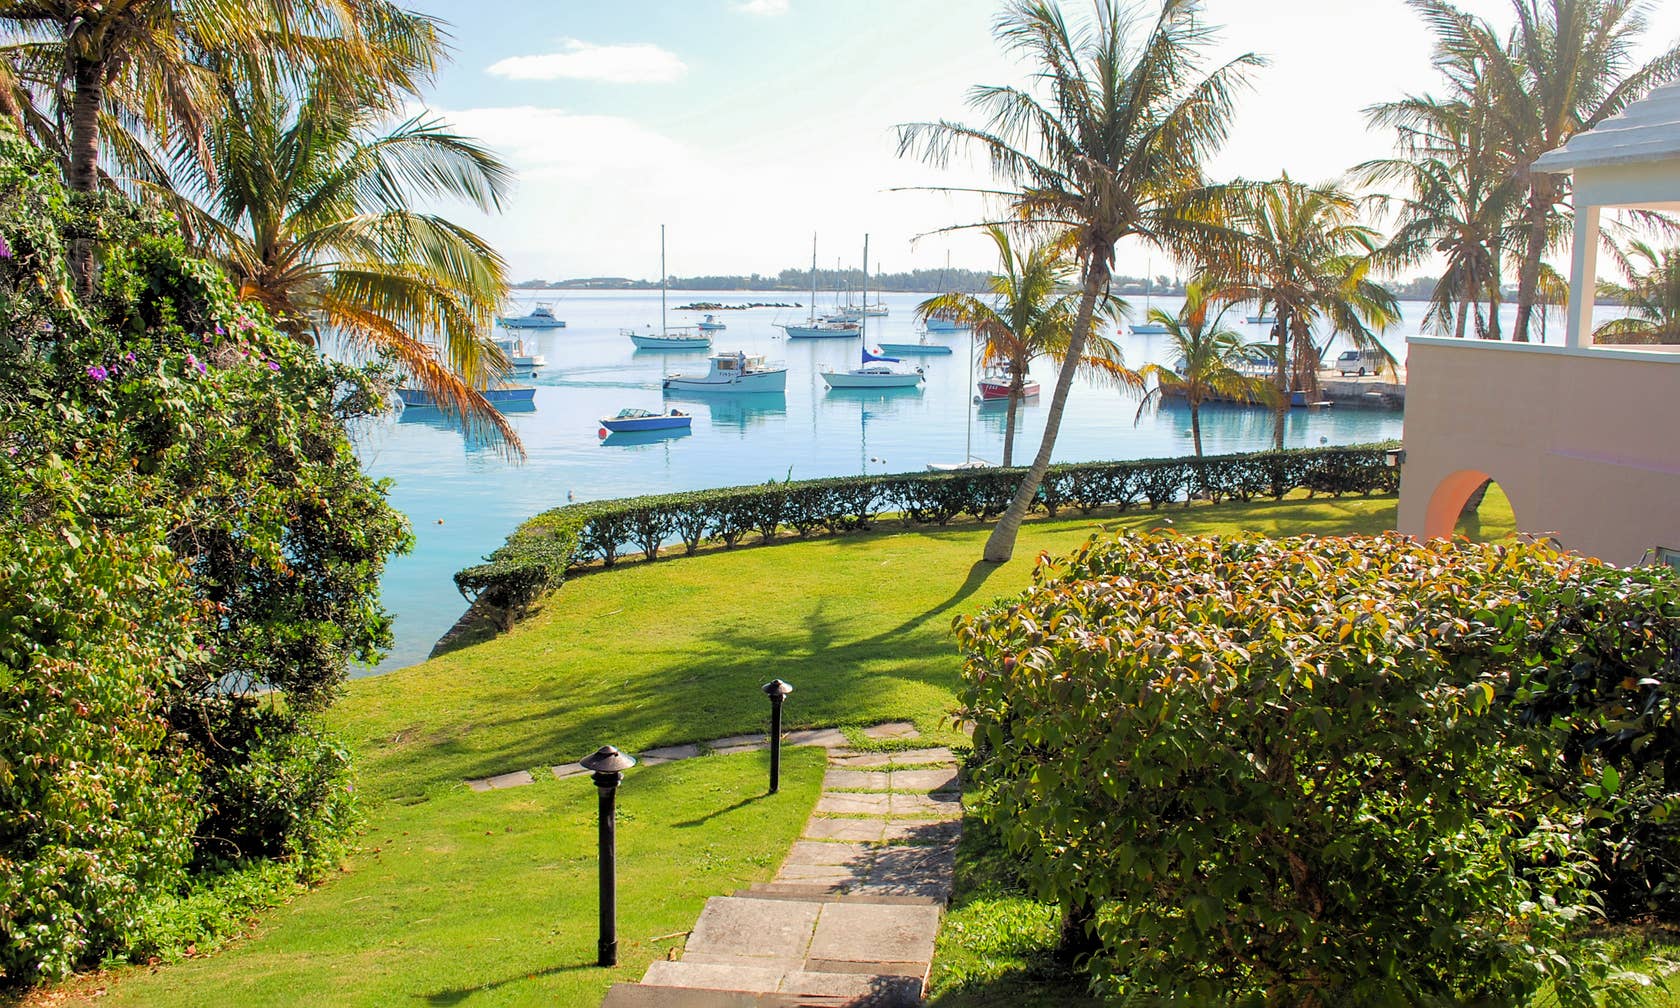 Bermuda konumunda kiralık tatil yerleri